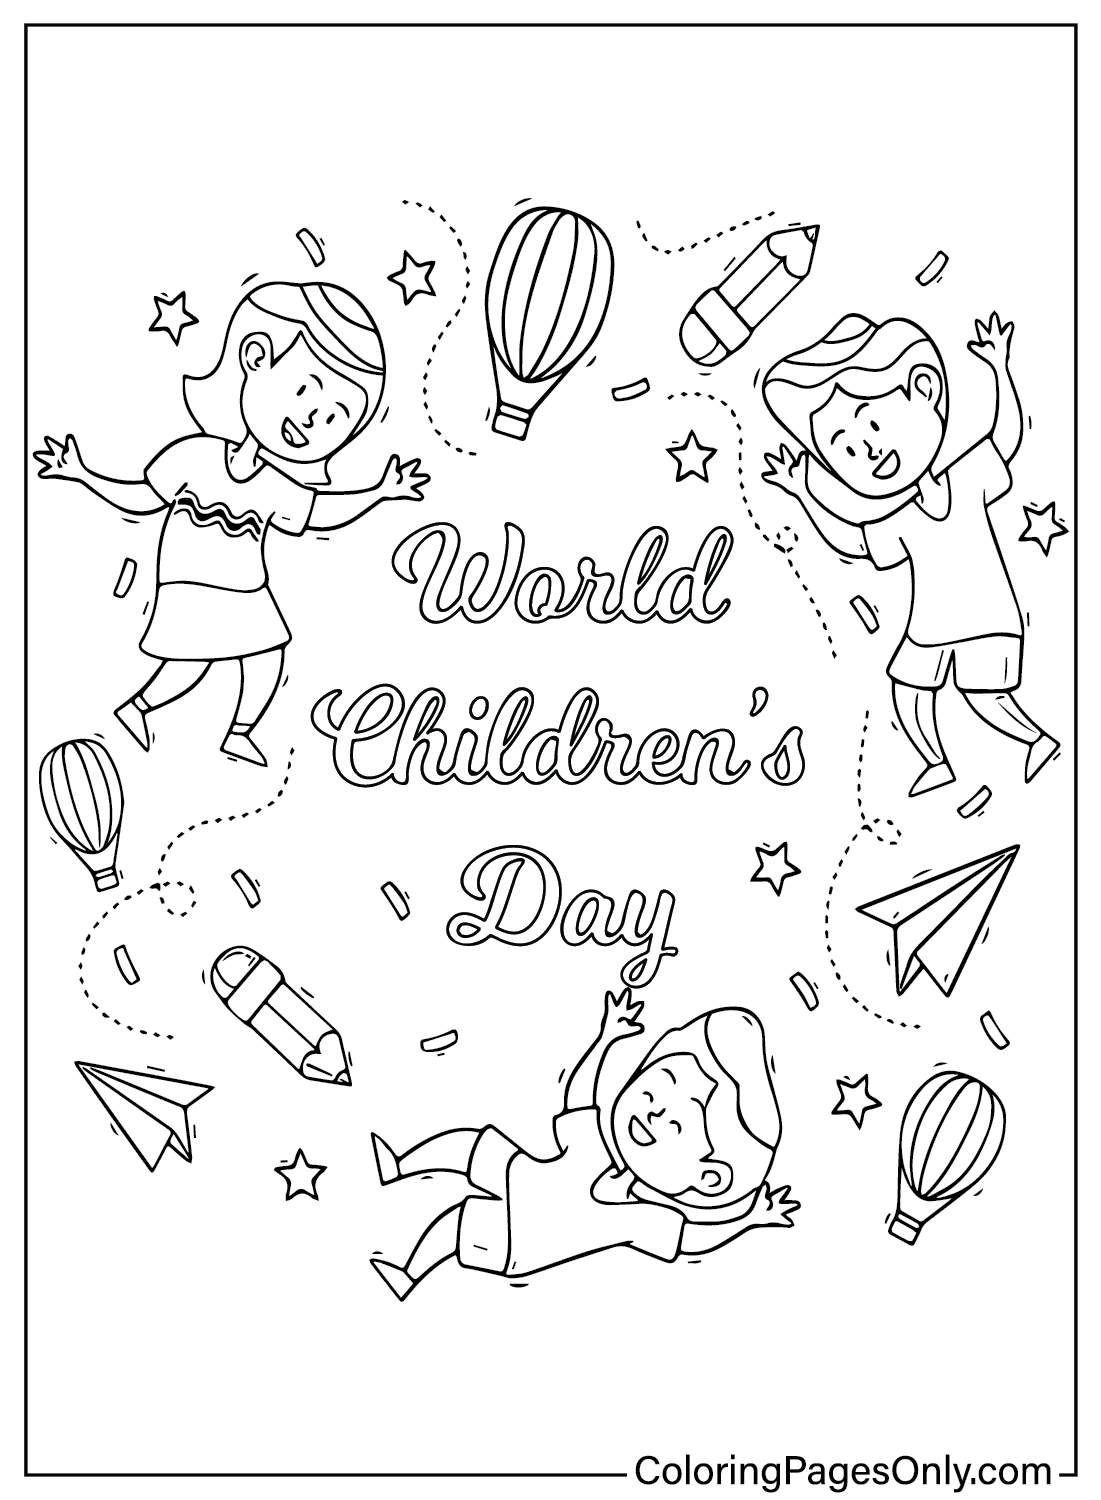 Цветная страница Всемирного дня защиты детей от Дня защиты детей